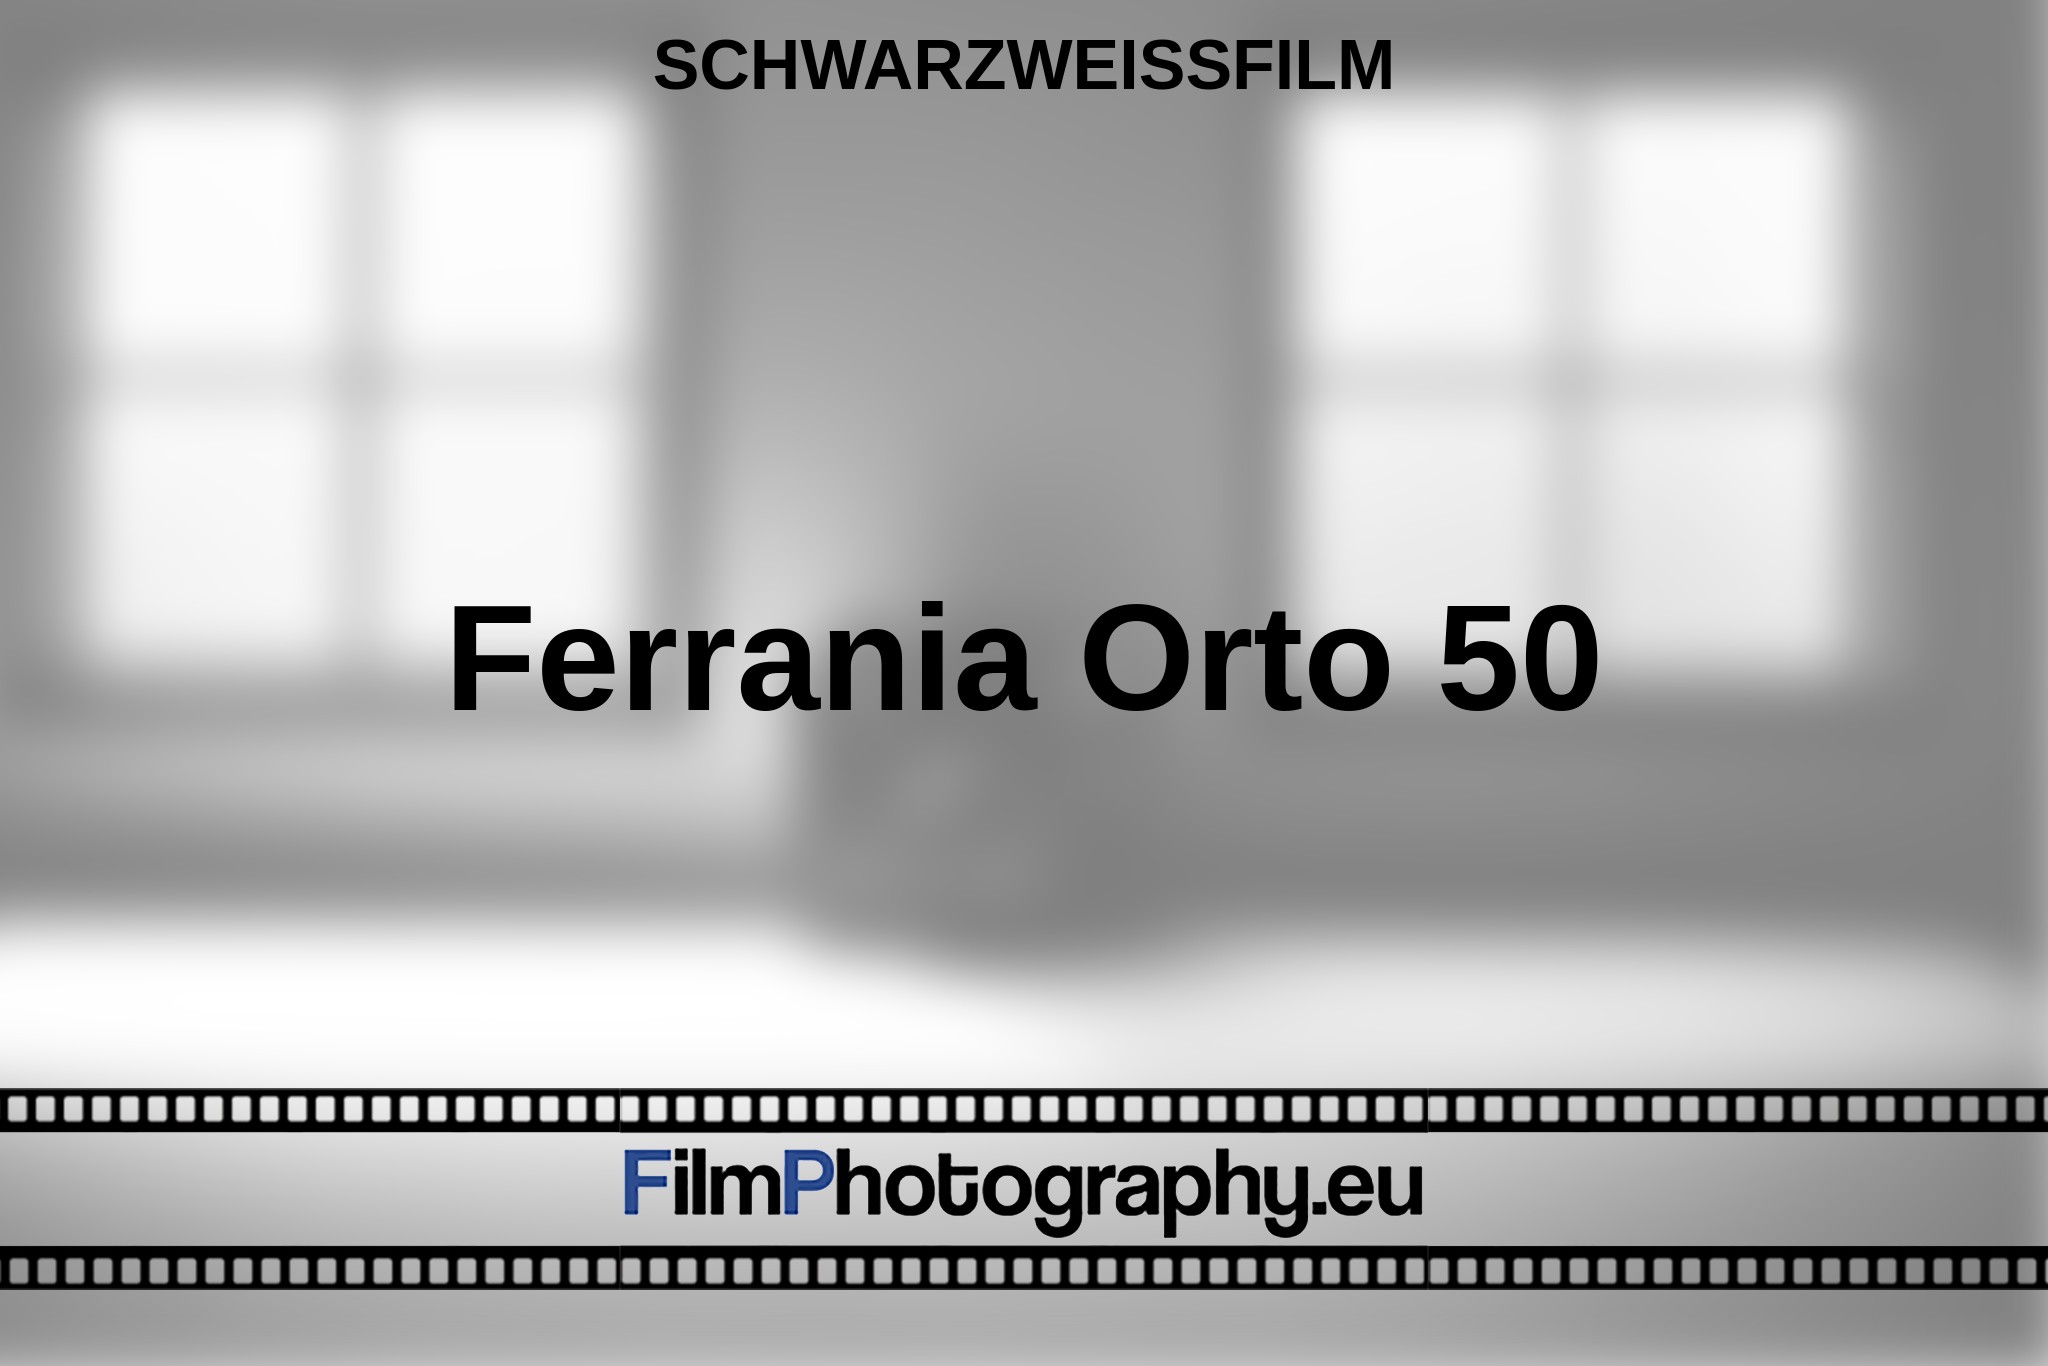 ferrania-orto-50-schwarzweißfilm-bnv.jpg